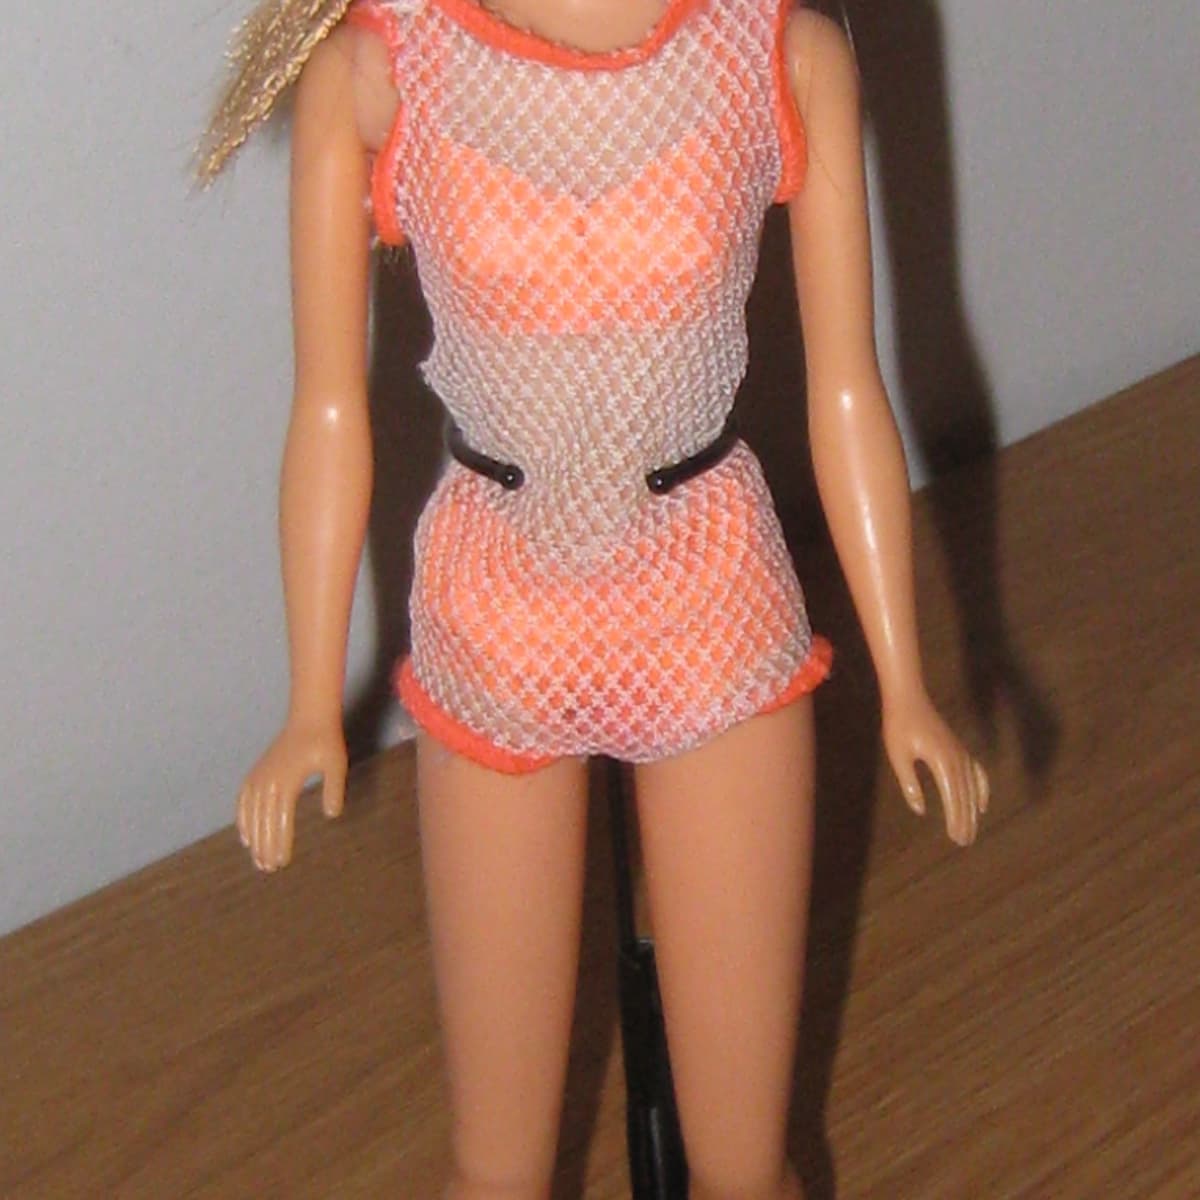 Vintage Mattel Barbie Midge clothes “Fashion Paks” “Ruffles´n lace